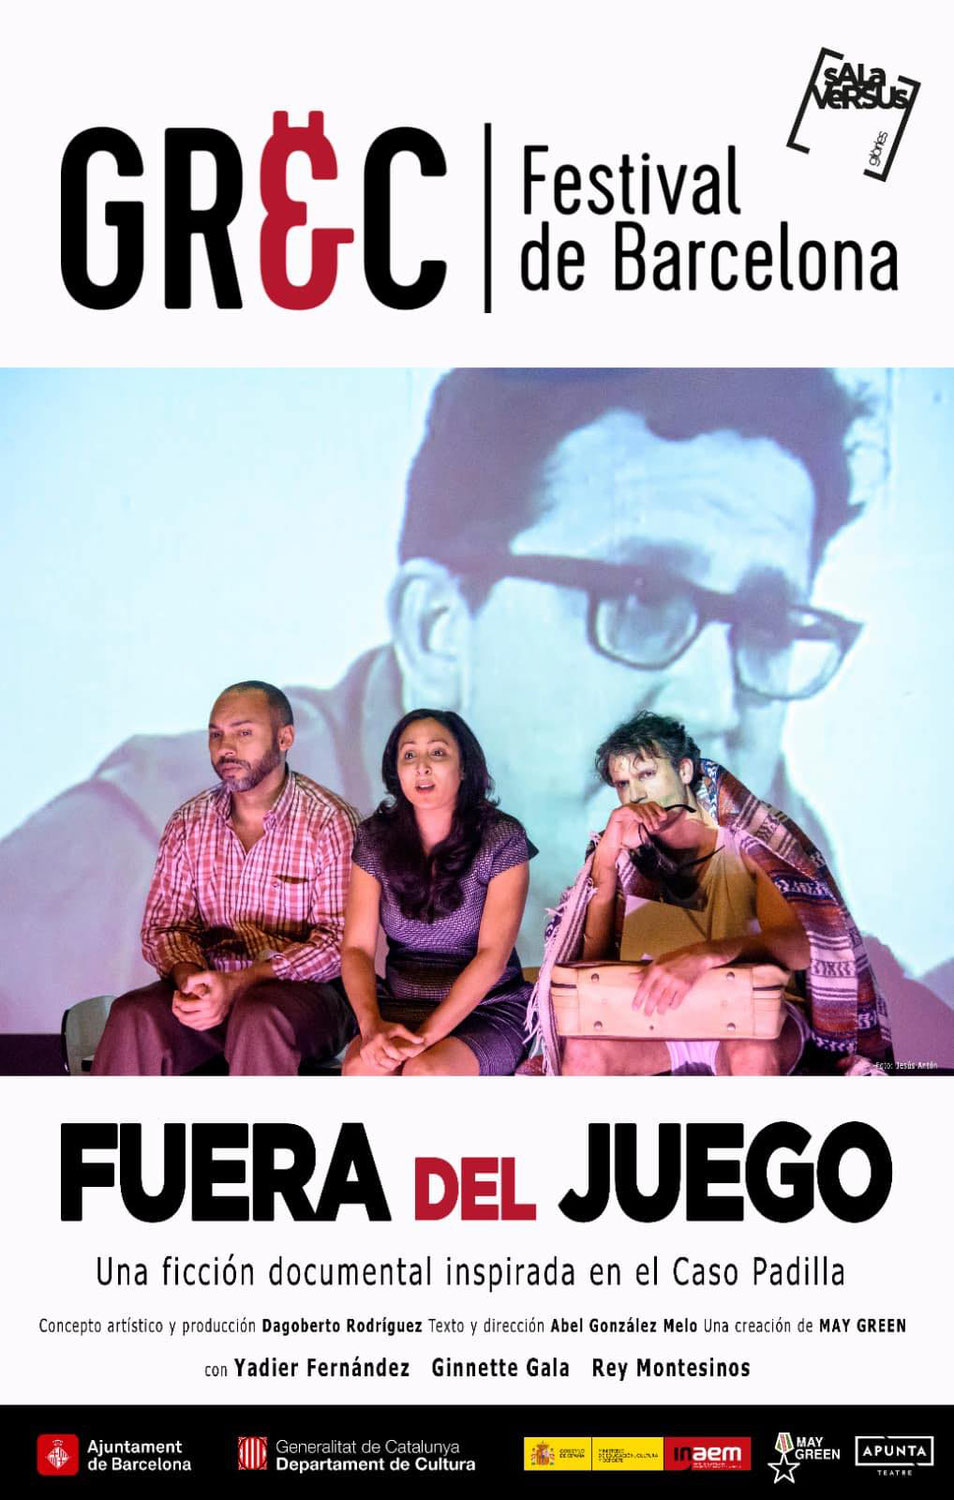 El profesor, investigador y actor Rey Montesino estrena en el Festival GREC de Barcelona